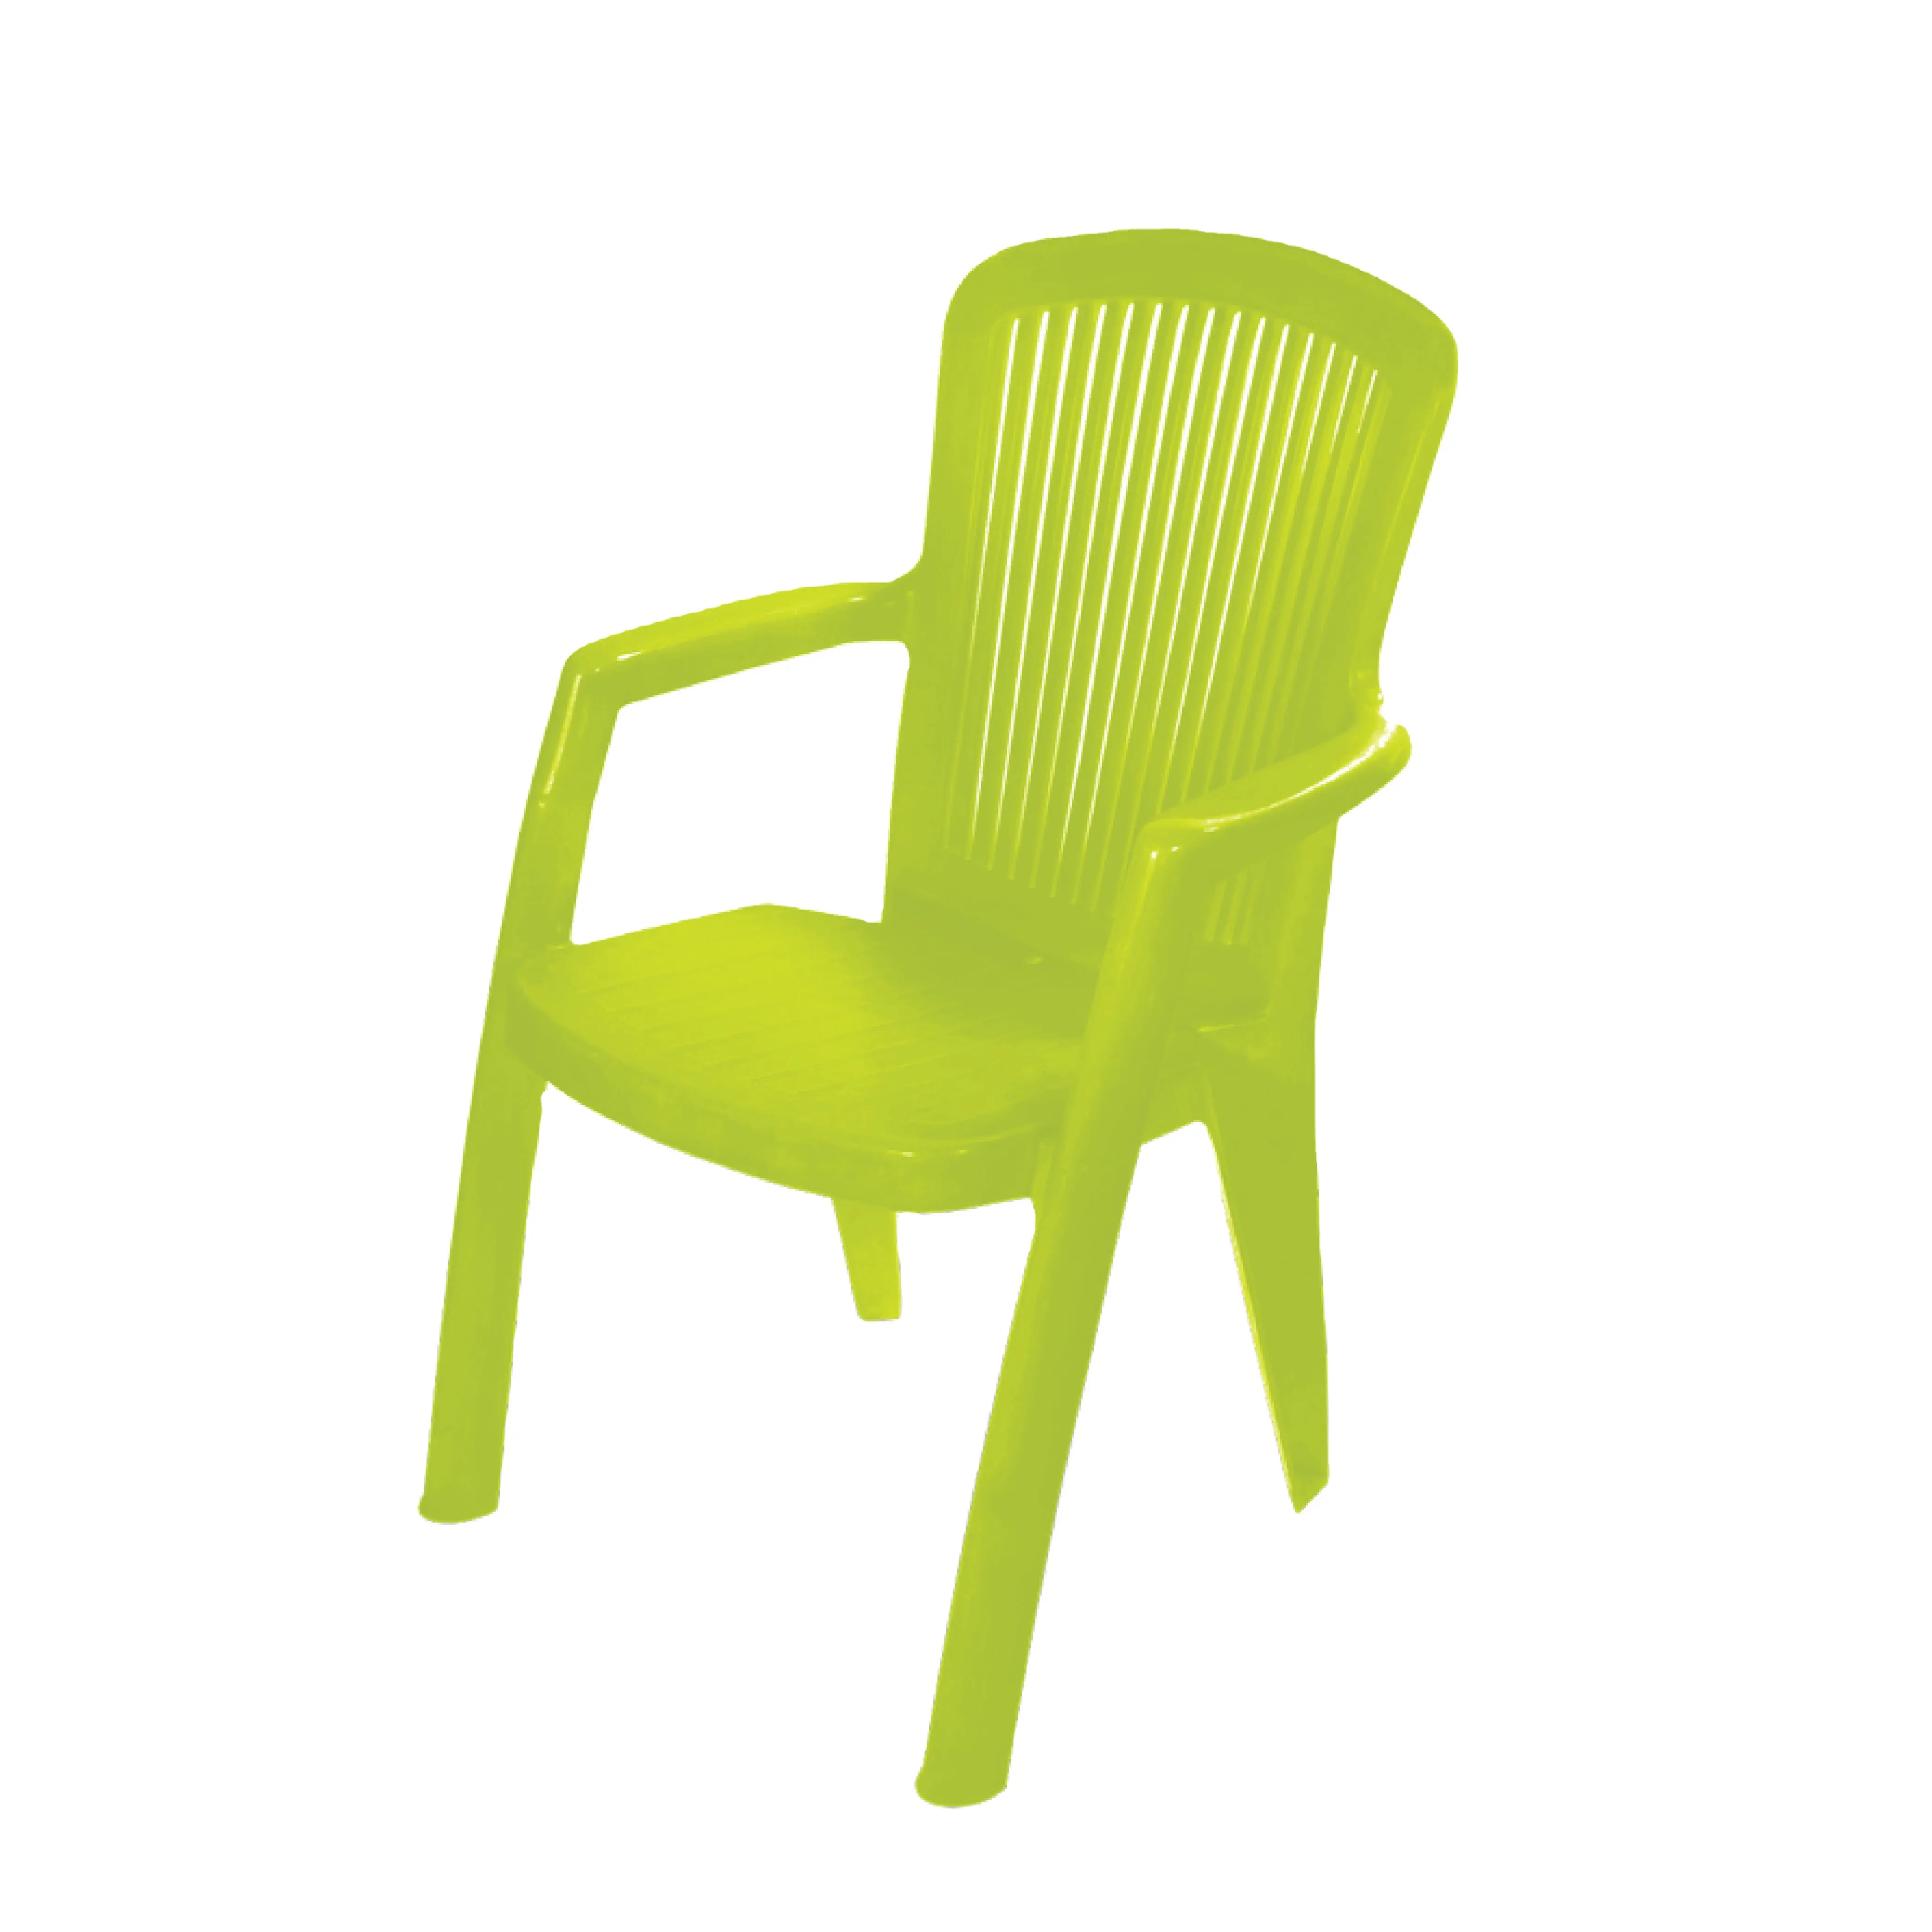 팔 의자 가구 태국 제조 업체 수출 고품질 제품 pvc 의자 홈 가구 거실 스타 안정